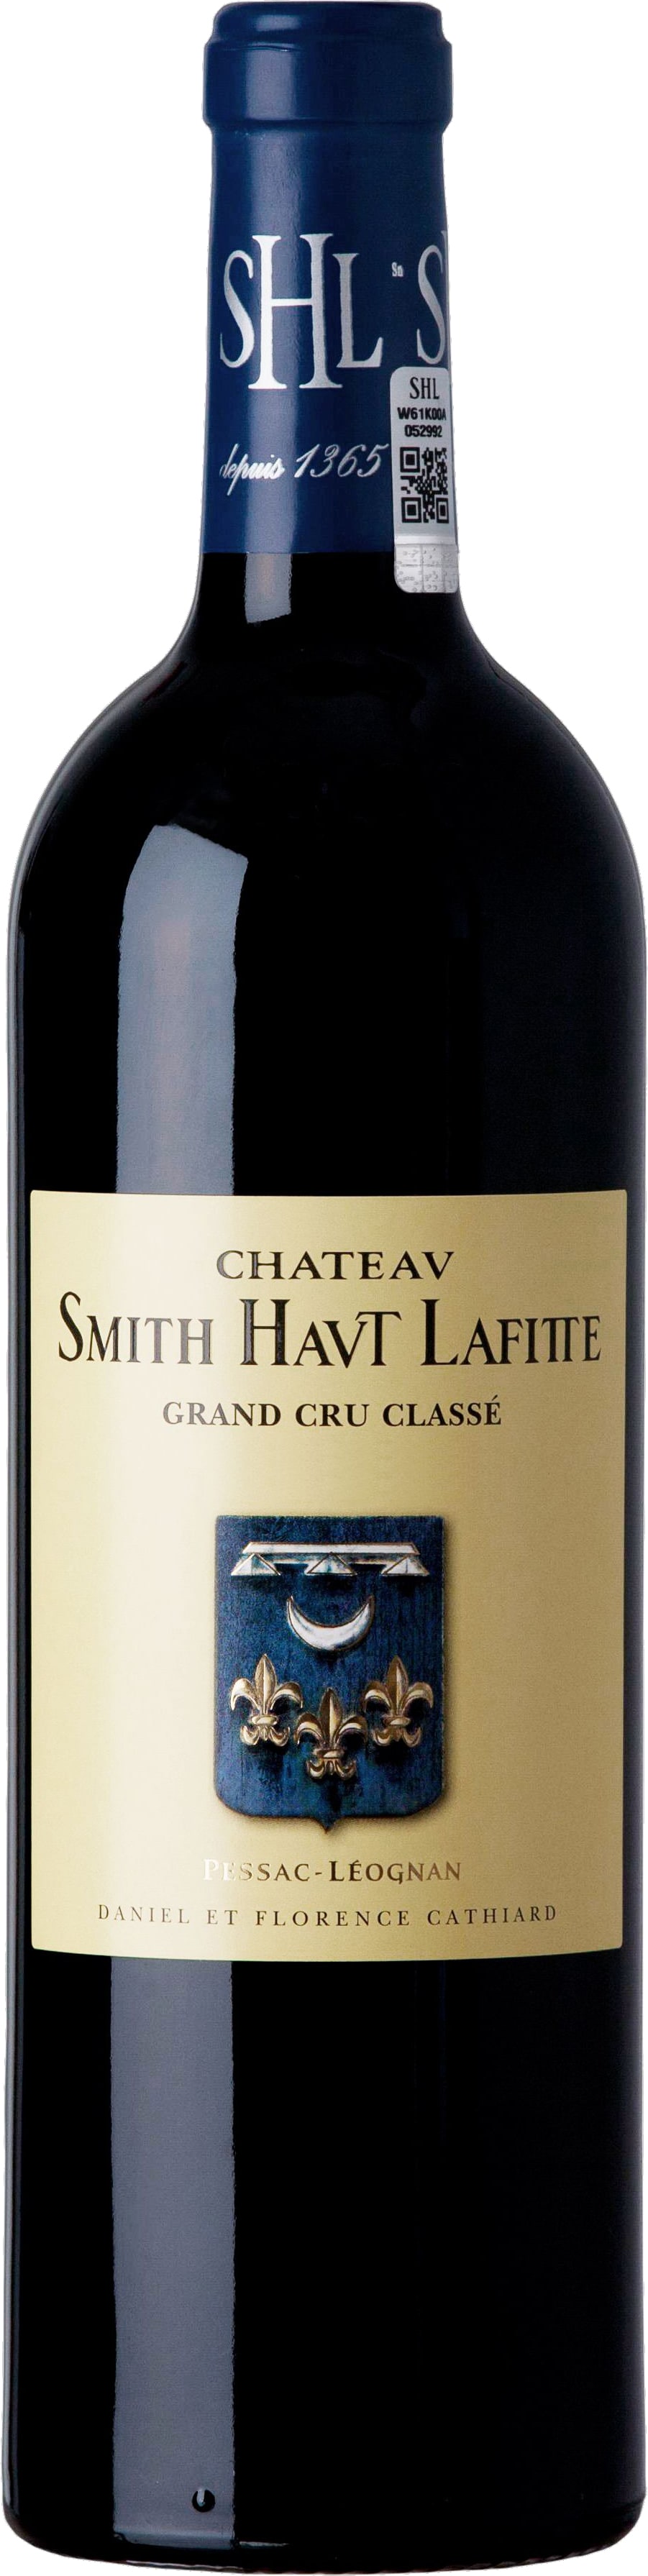 Chteau Smith Haut Lafitte - Pessac-Leognan 2010 (750)